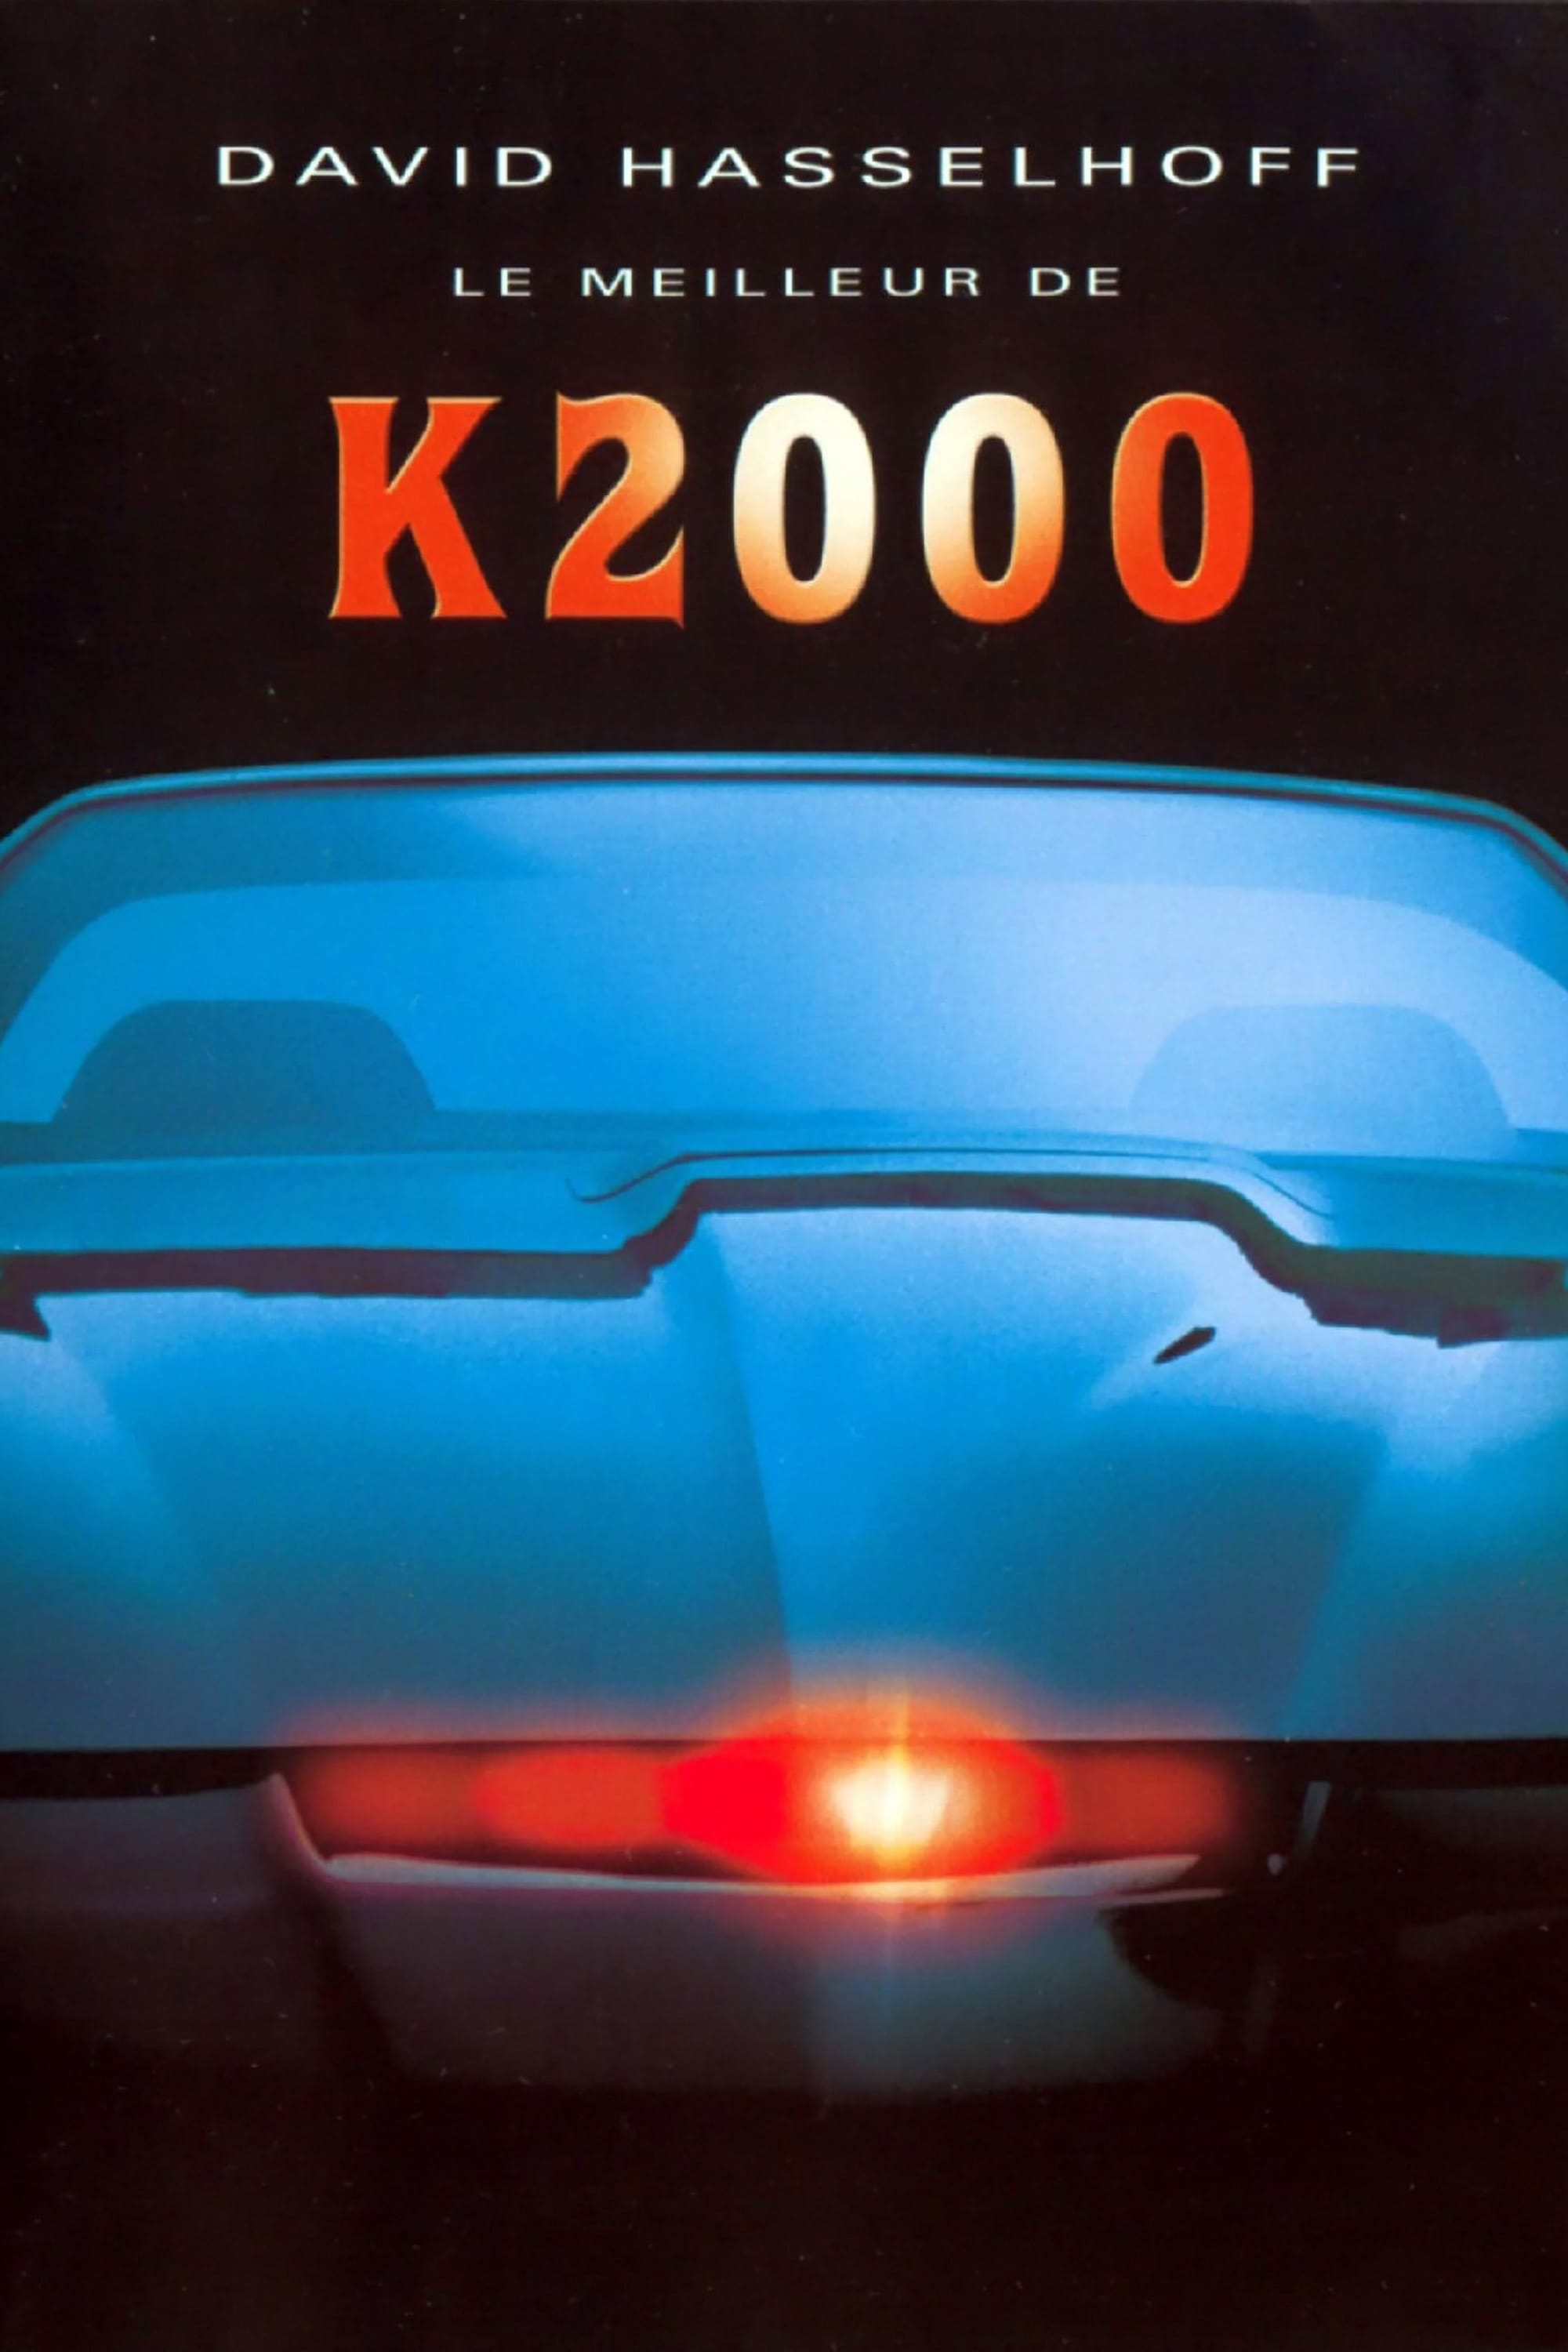 David Hasselhoff écarté de la version cinéma de K2000